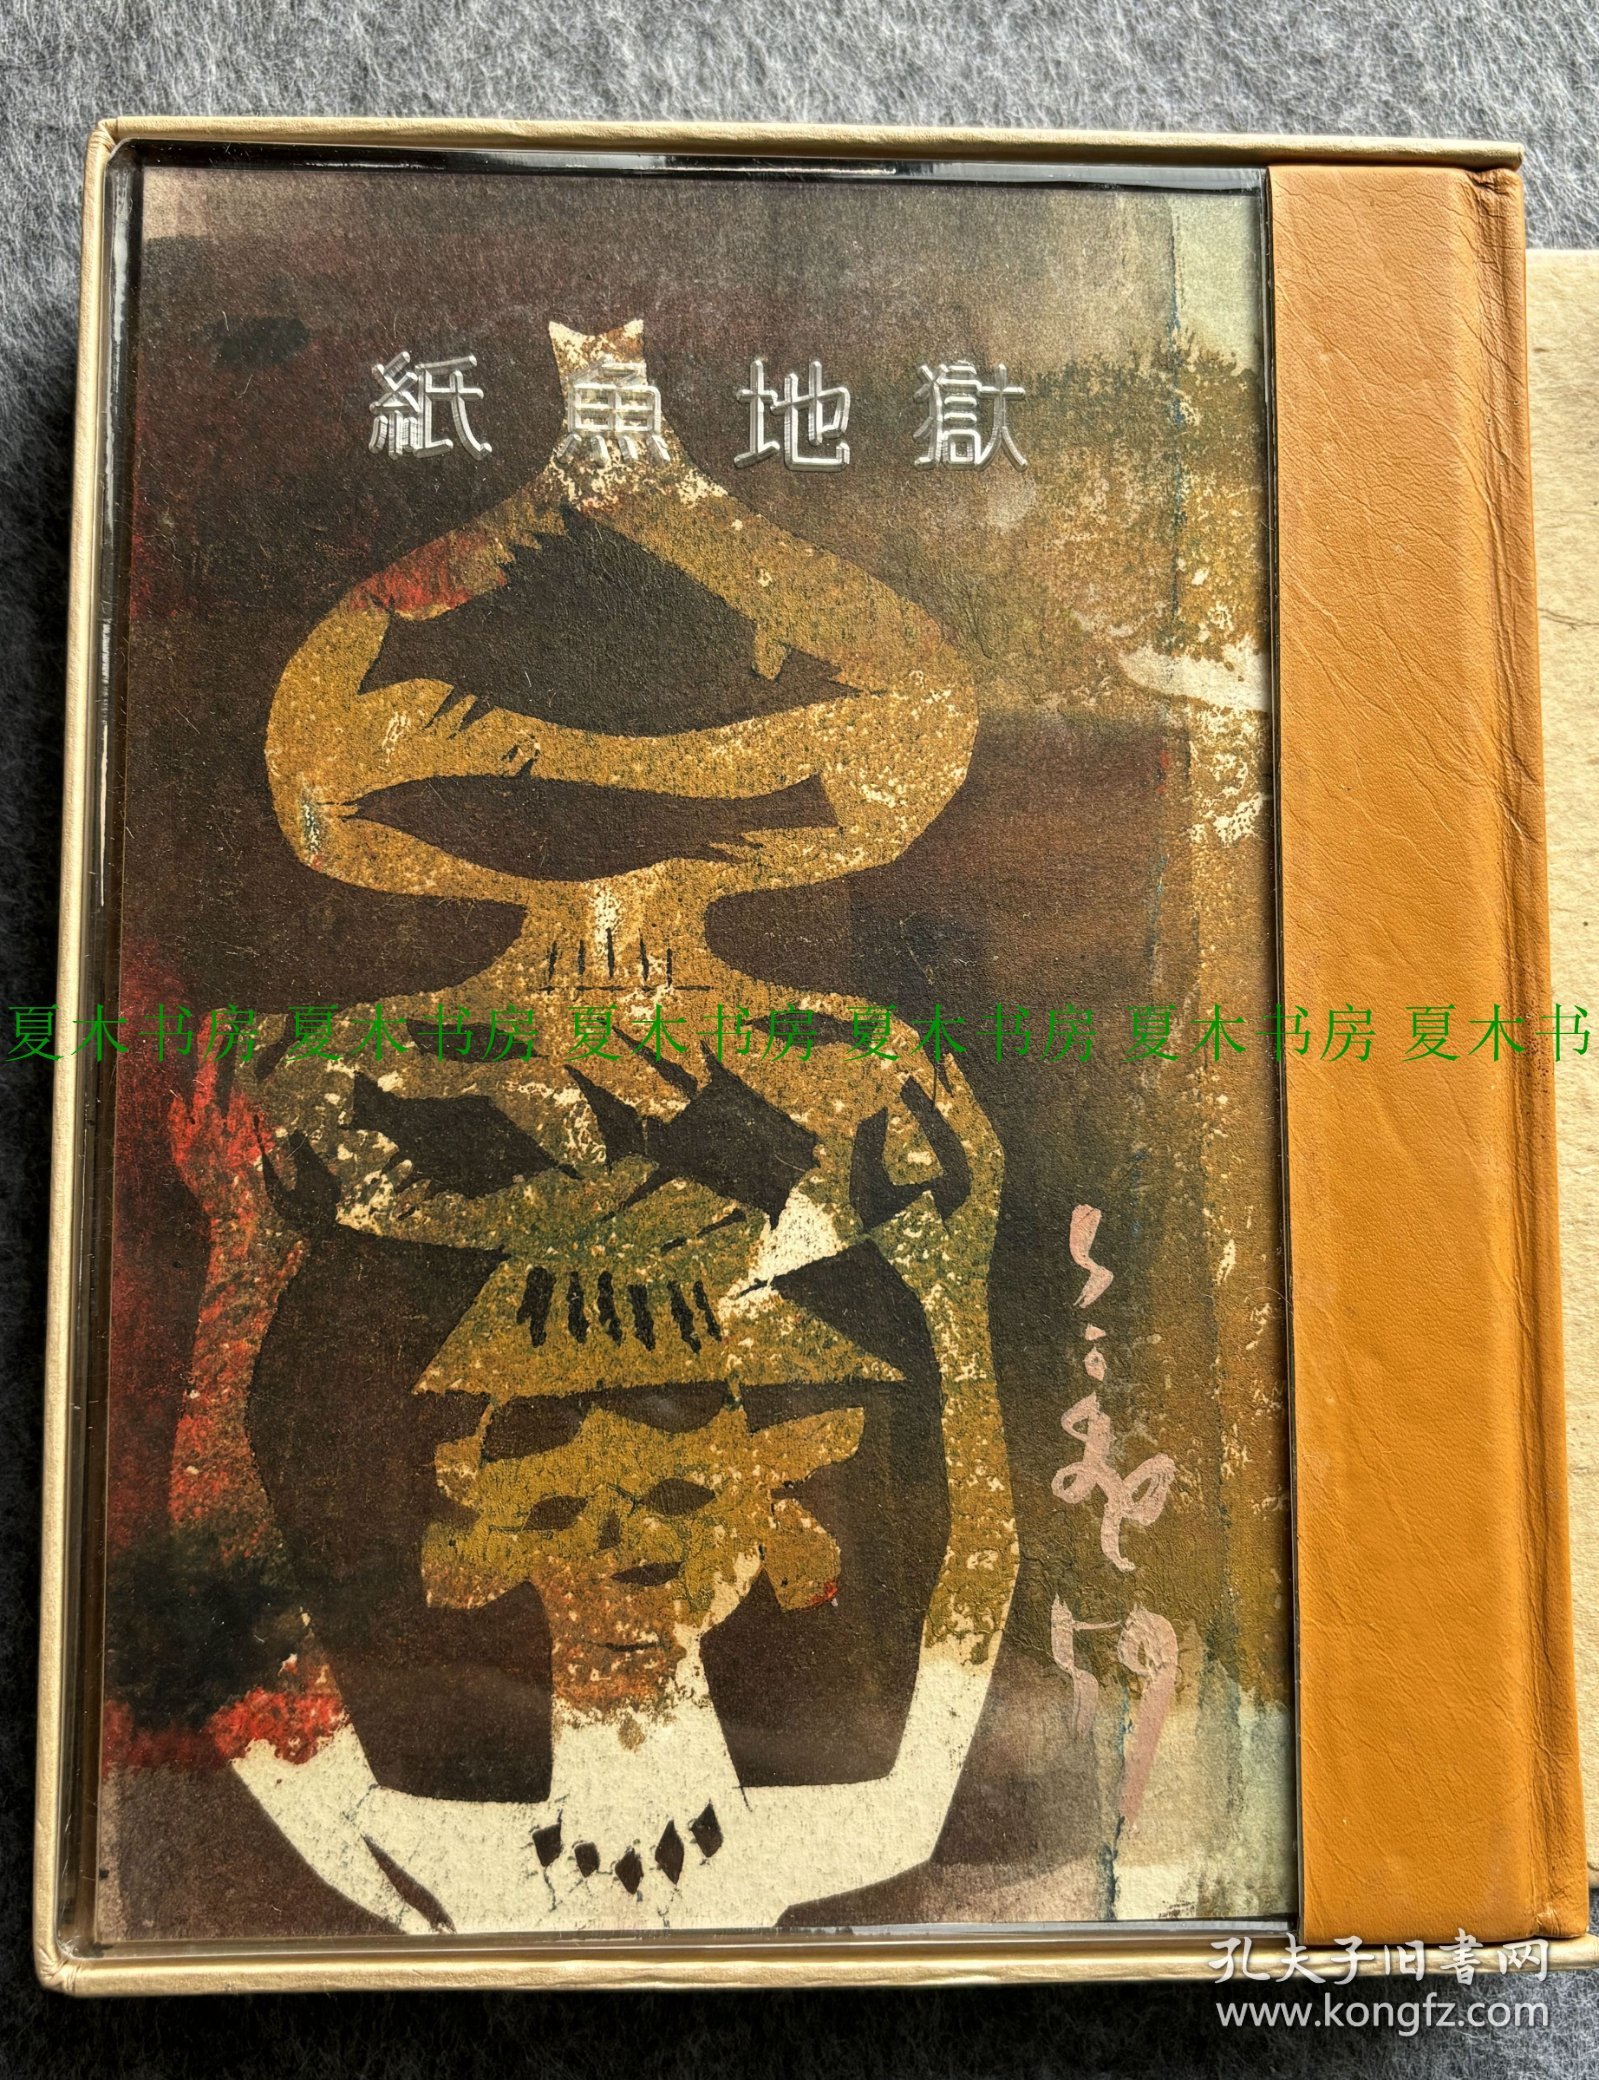 日本著名藏书家、书话家、艺术史家、日本藏书票鼻祖 斋藤昌三限量题词签名本《纸鱼地狱》，限量300部，特制第38号